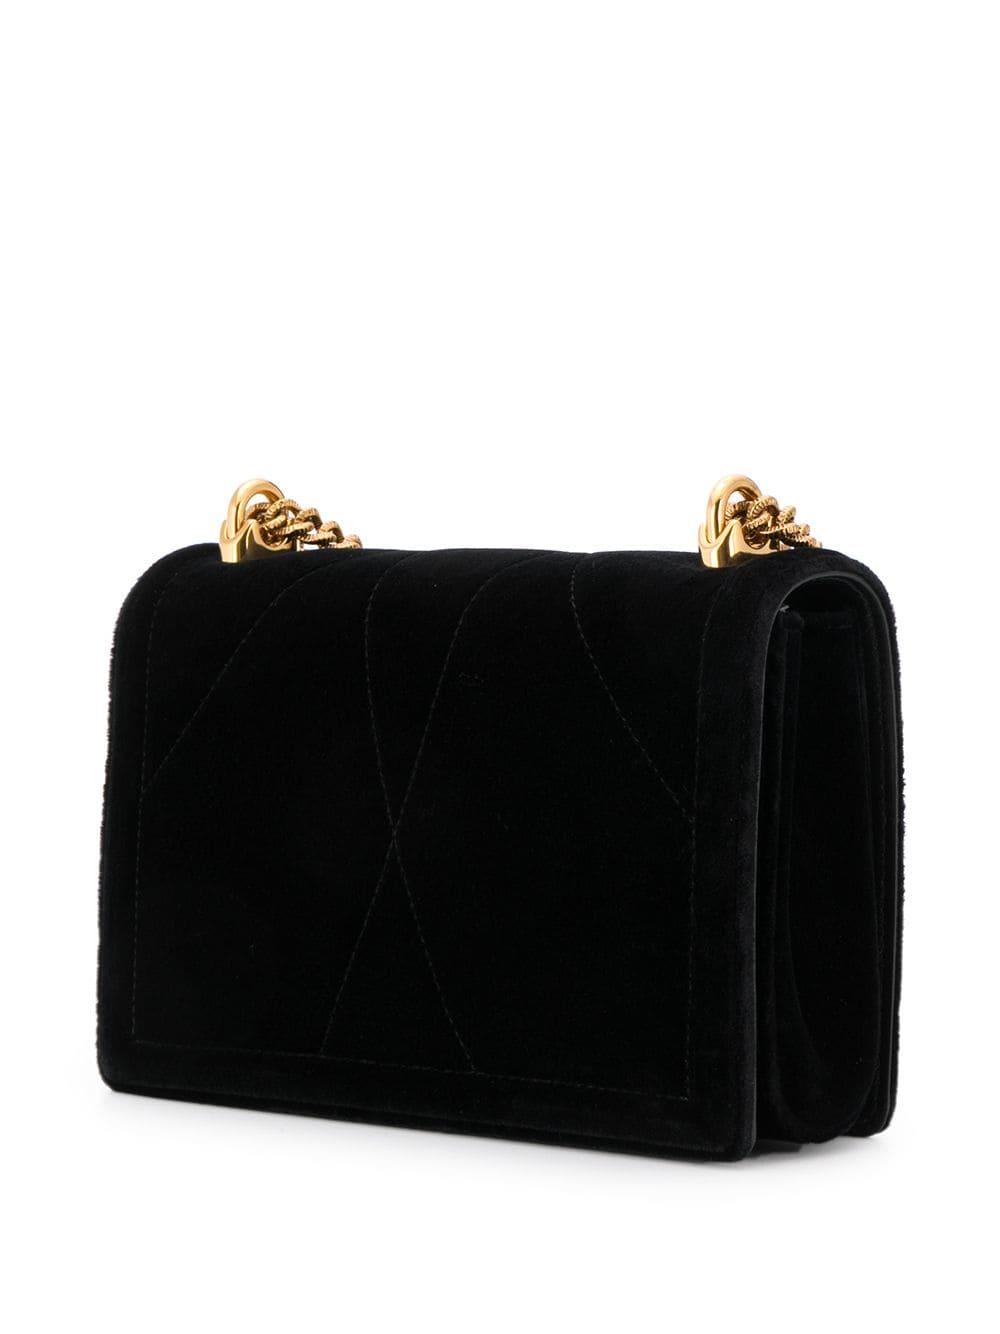 Dolce & Gabbana Devotion Shoulder Bag in Black - Lyst